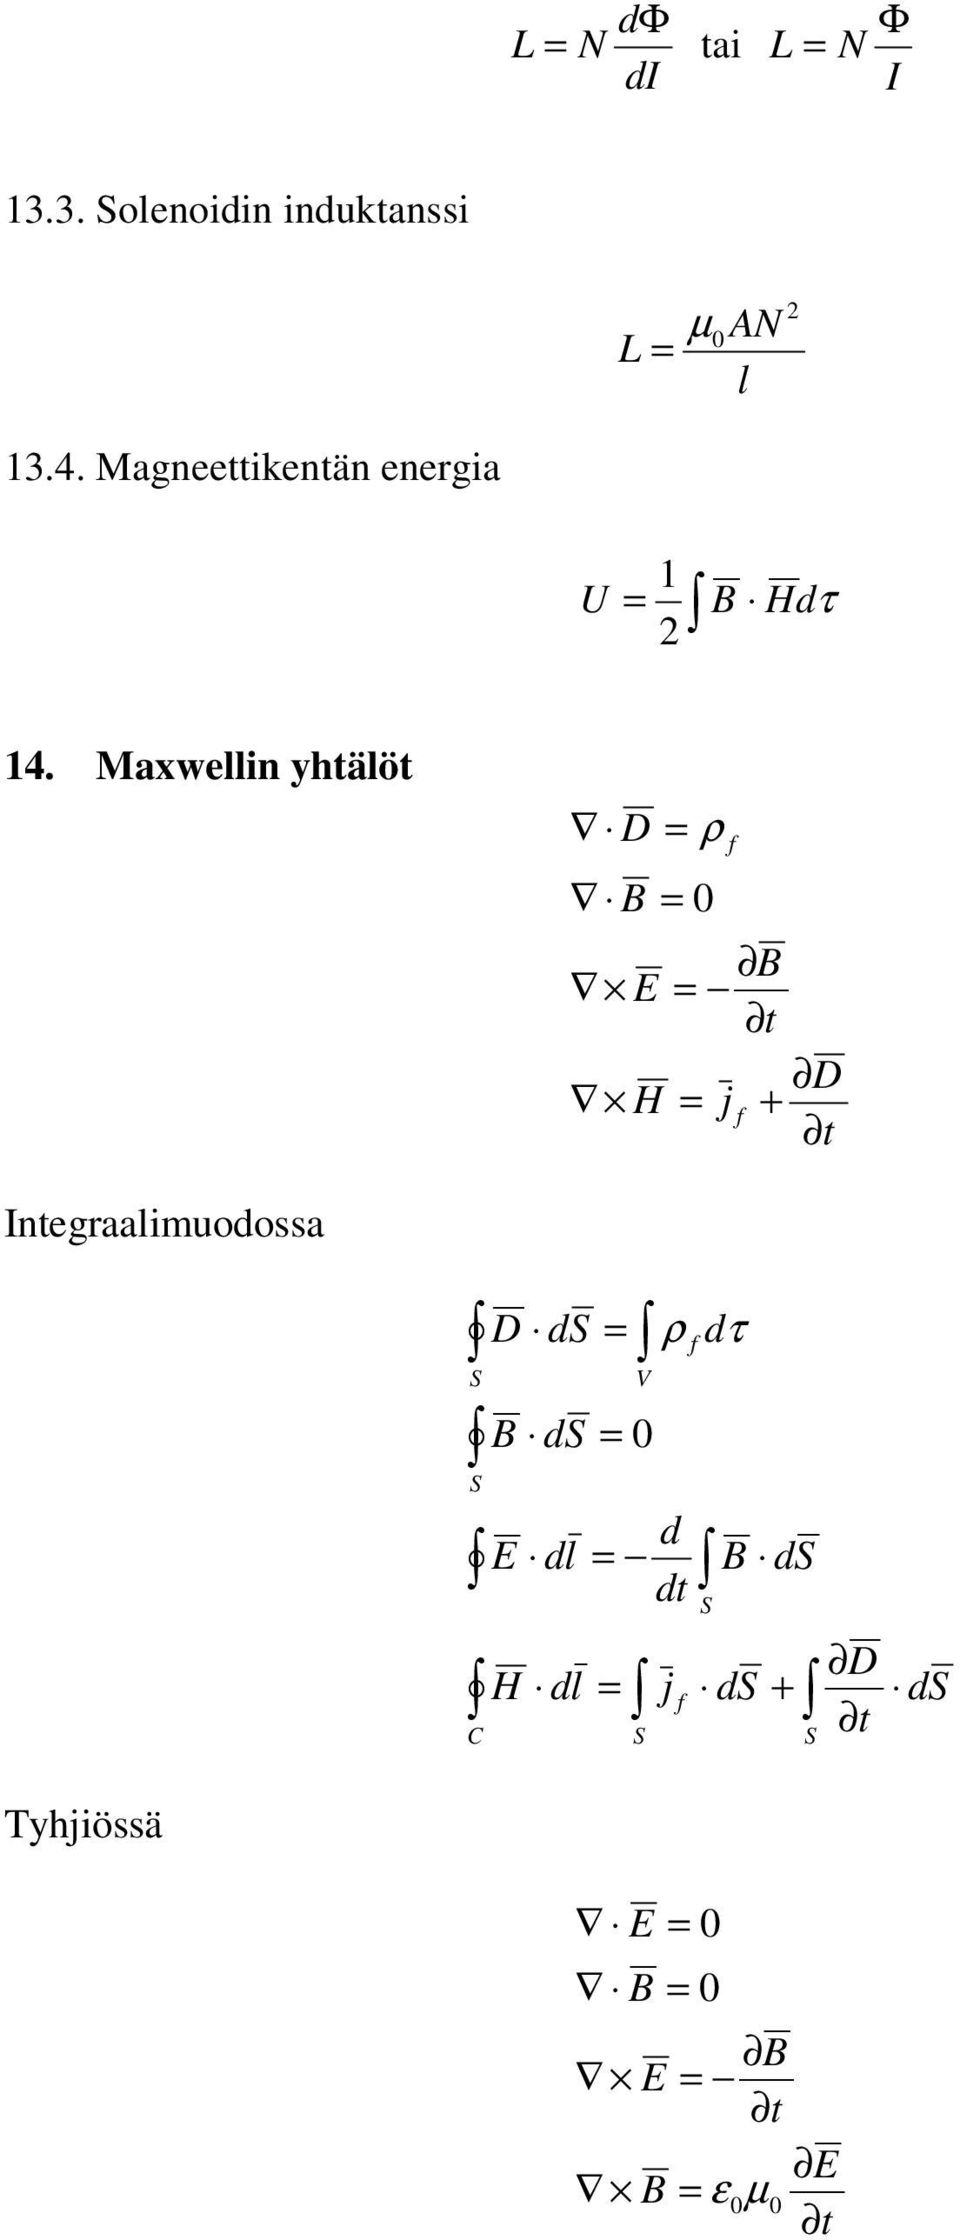 Maxwelln yhtälöt D ρ E t D H j + t